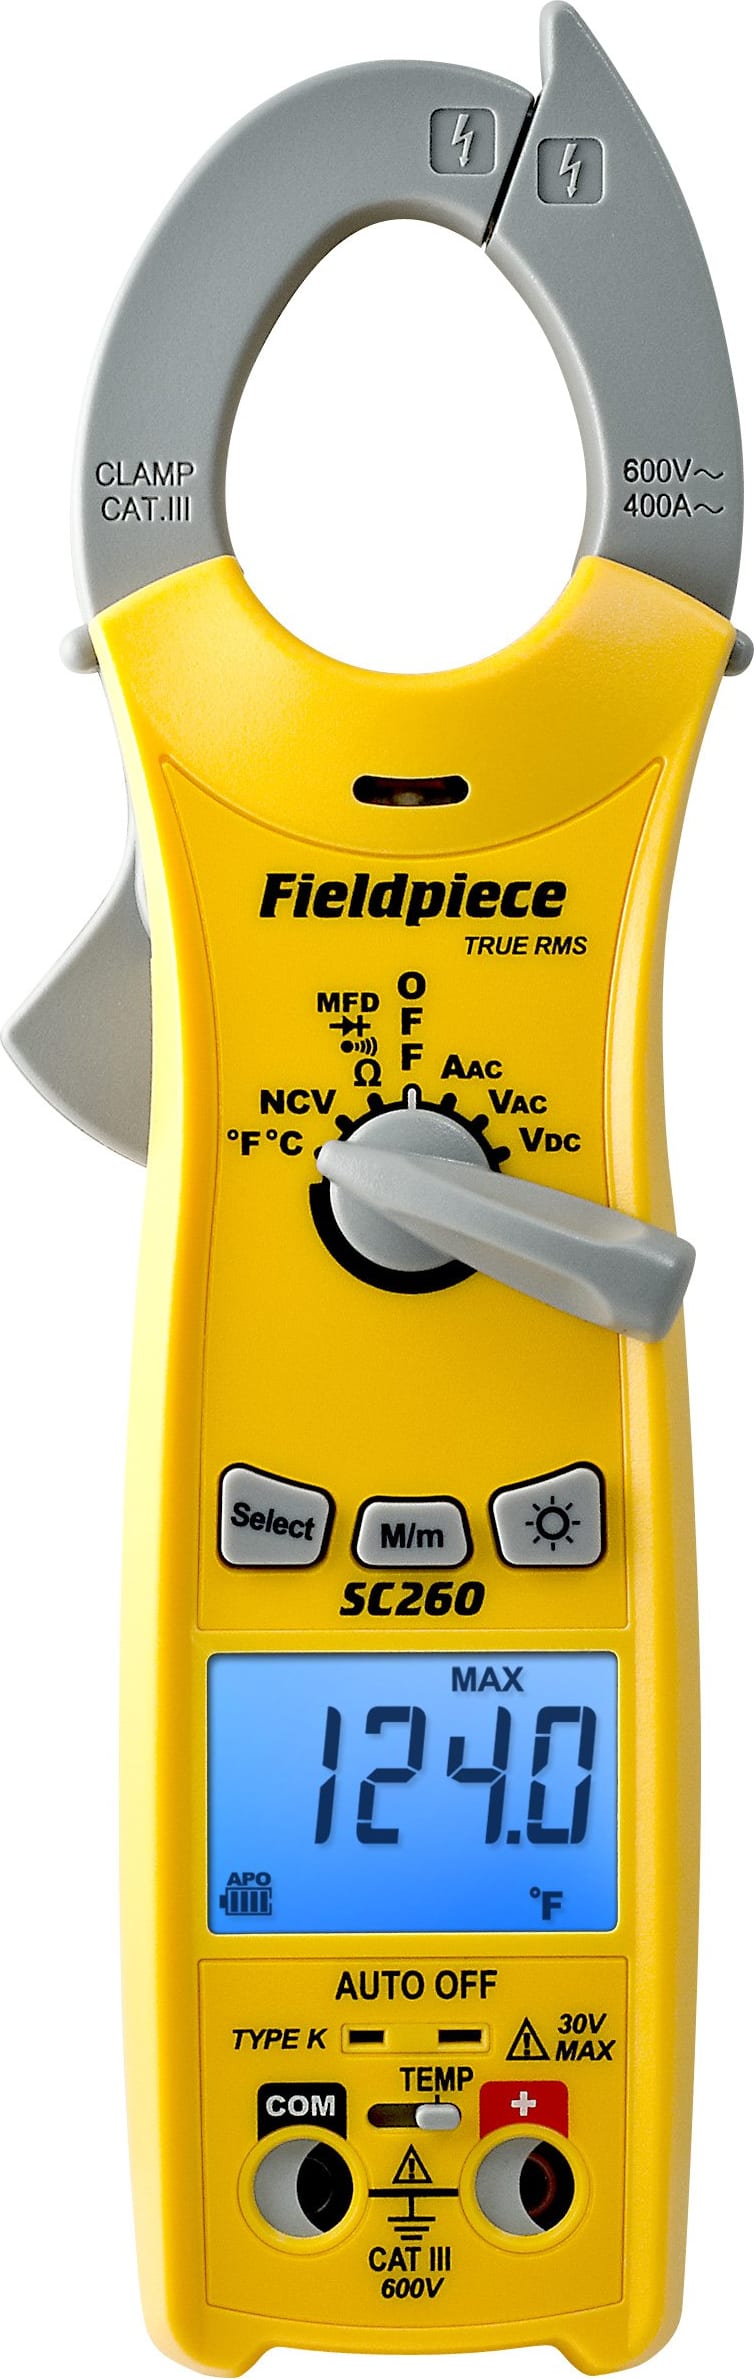 SC260 - Pince multimètre compacte avec MQ réelle - Fieldpiece